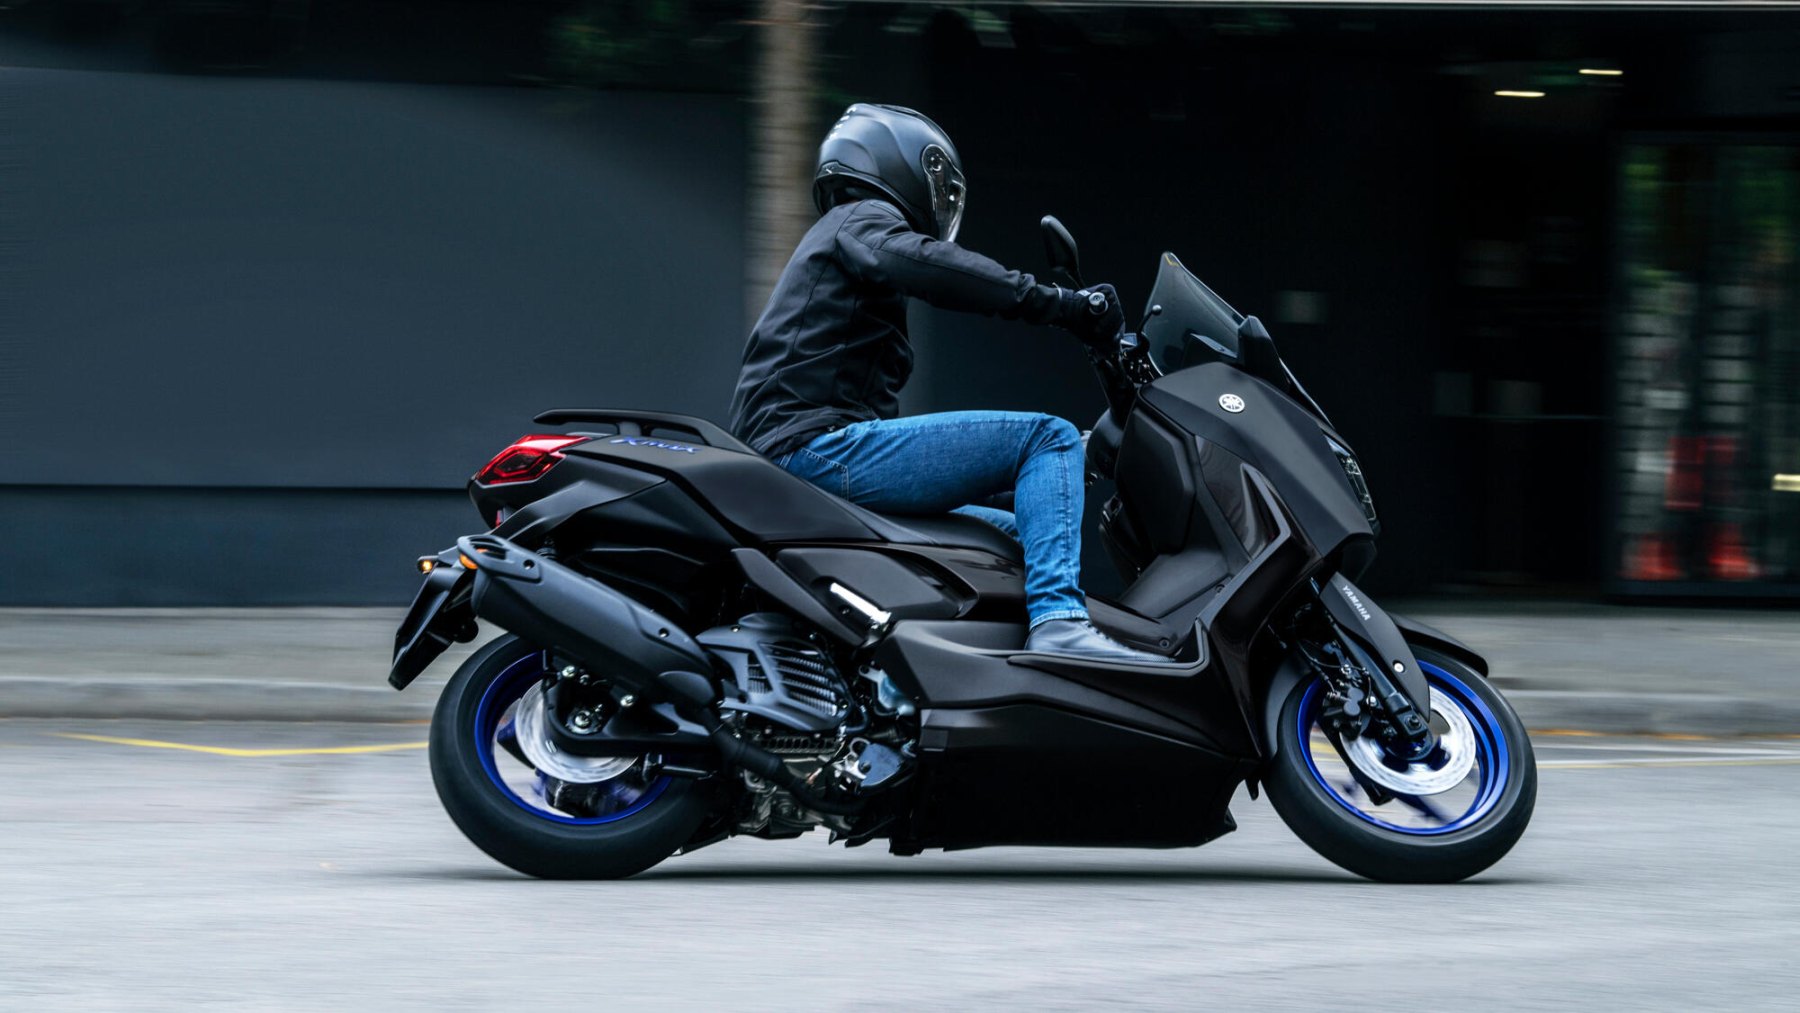 Vista dinámica de la Yamaha X-Max 125cc en movimiento, destacando su diseño aerodinámico.